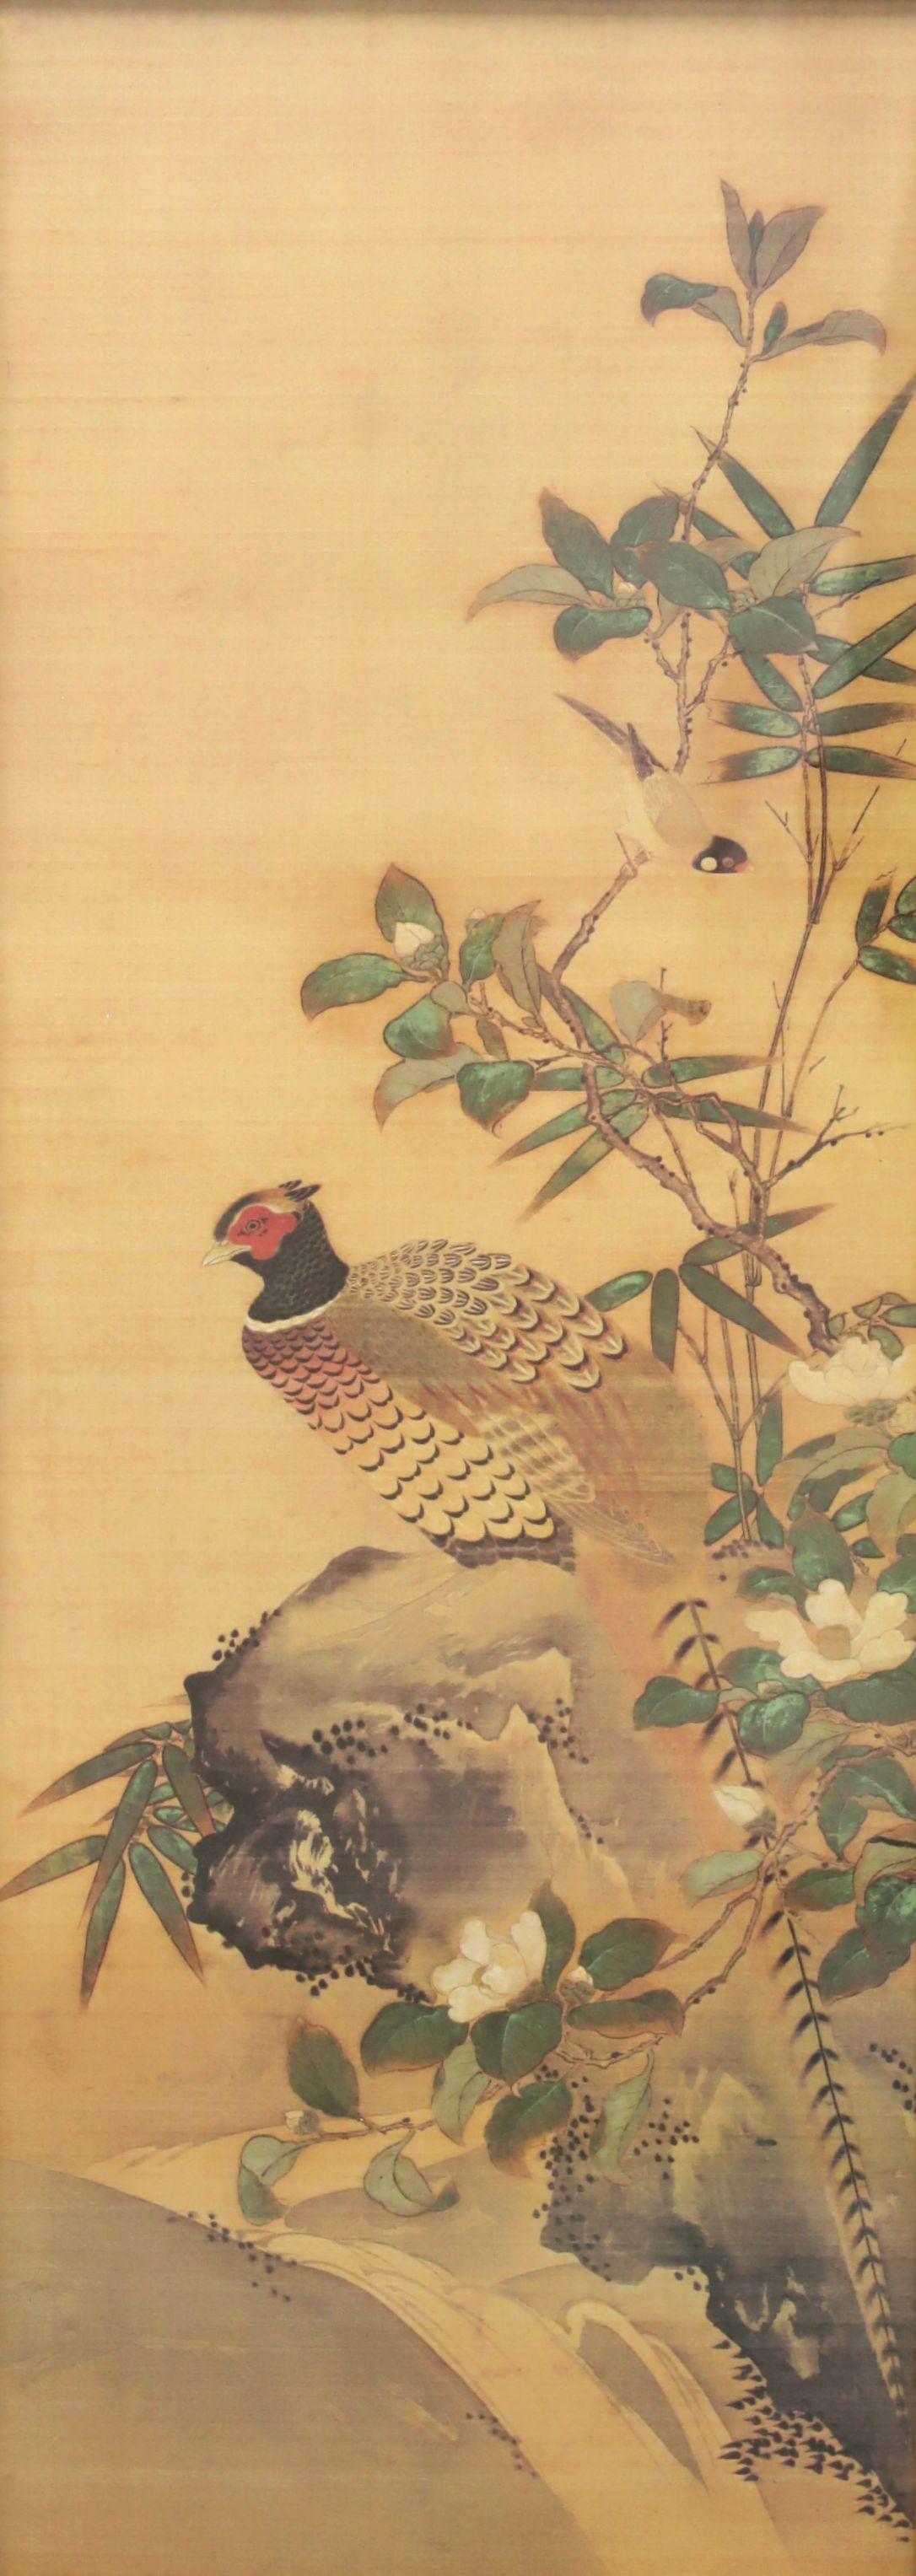 Paire d'impressions japonaises encadrées sur papier représentant des oiseaux dans la nature, datant du milieu du 20e siècle. Chacun est présenté encadré derrière une vitre dans un cadre en faux bambou et bois. Le faux bambou a été peint en doré et